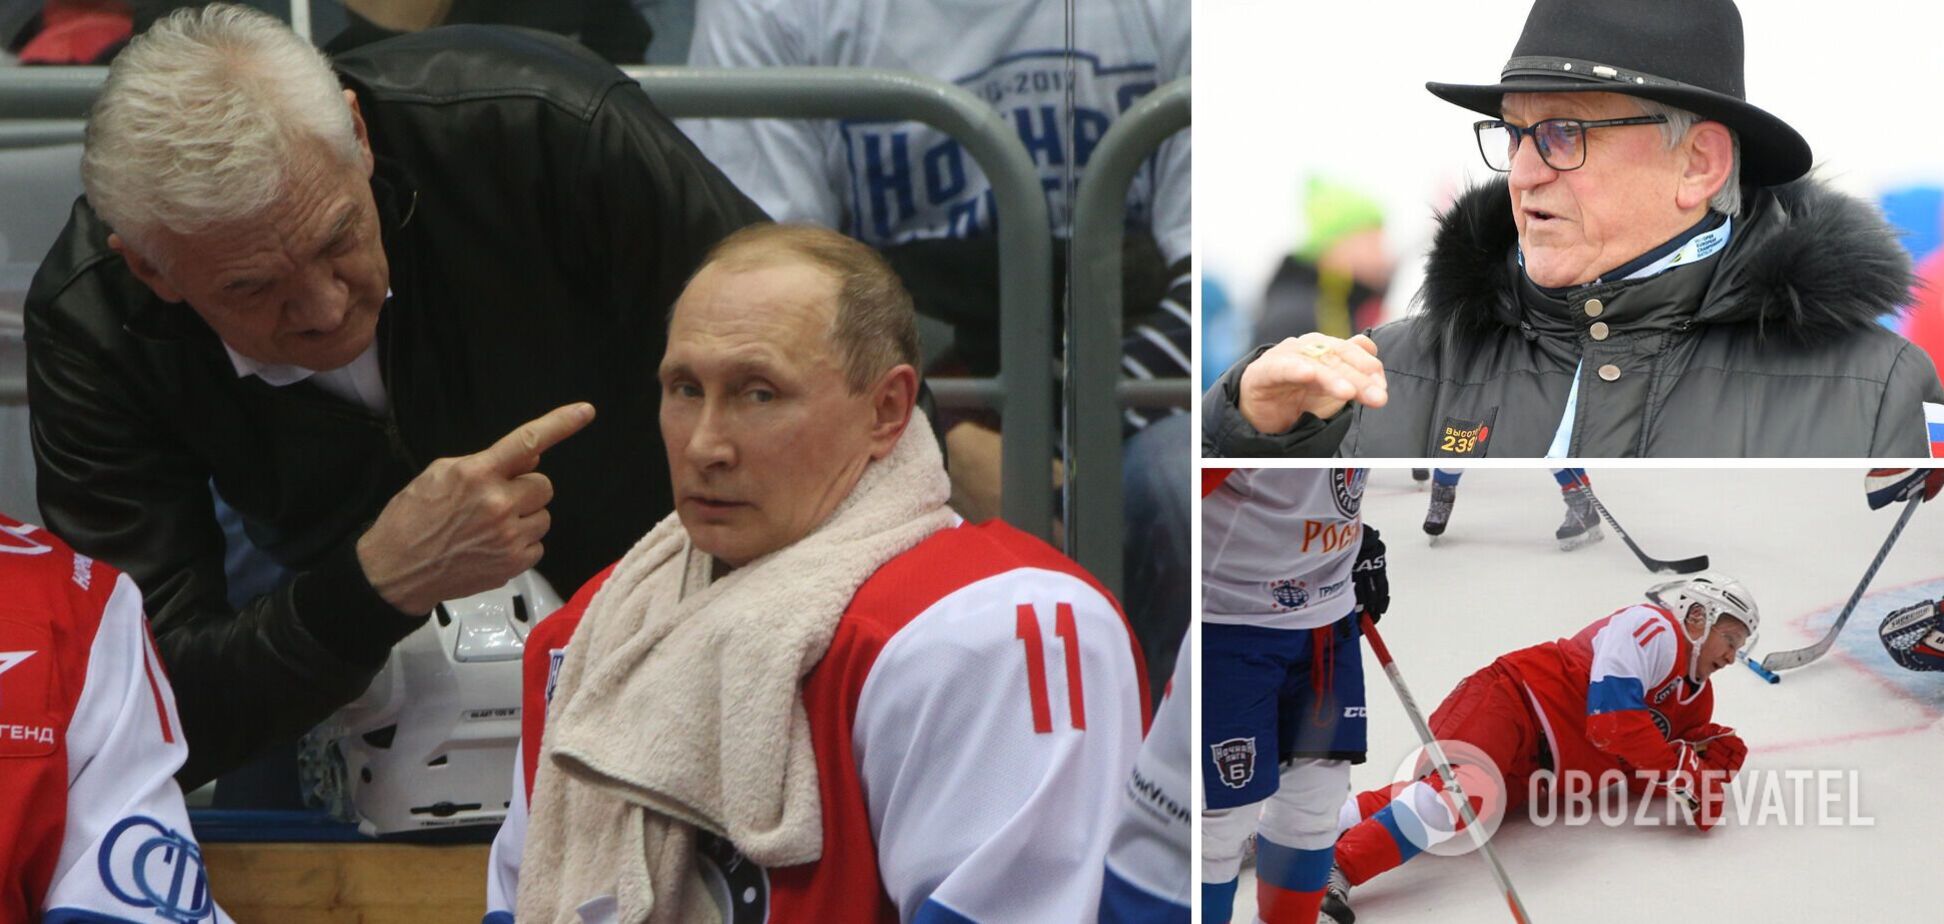 Олімпійський чемпіон заявив, що Росію повернуть на ЧС після 'перемоги у СВО'. Йому порадили викликати санітарів